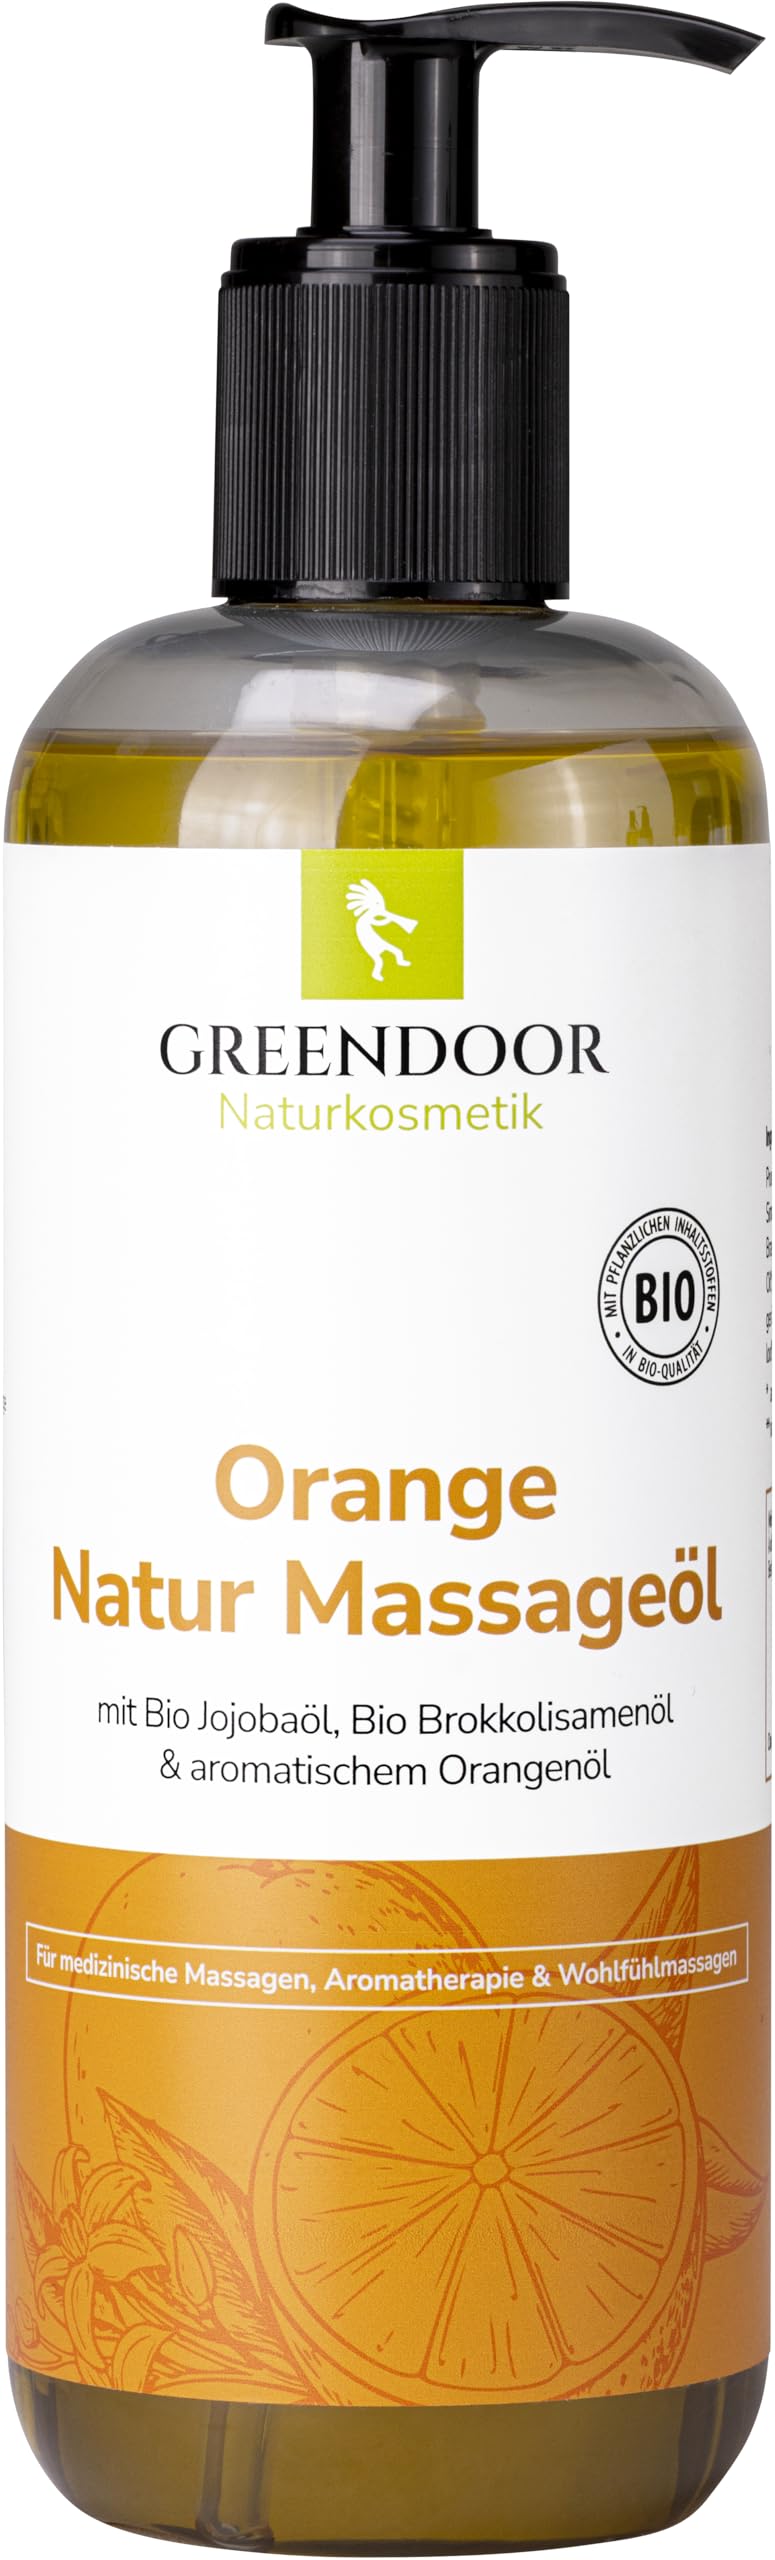 GREENDOOR Sparpackung Bio Massageöl Orange 500ml vegan mit Bio Jojobaöl, für Naturkosmetik Massagen ohne Paraffin, BIO Öle und natürliches reines ätherisches Orangen-Öl, auch als Natur Körperöl